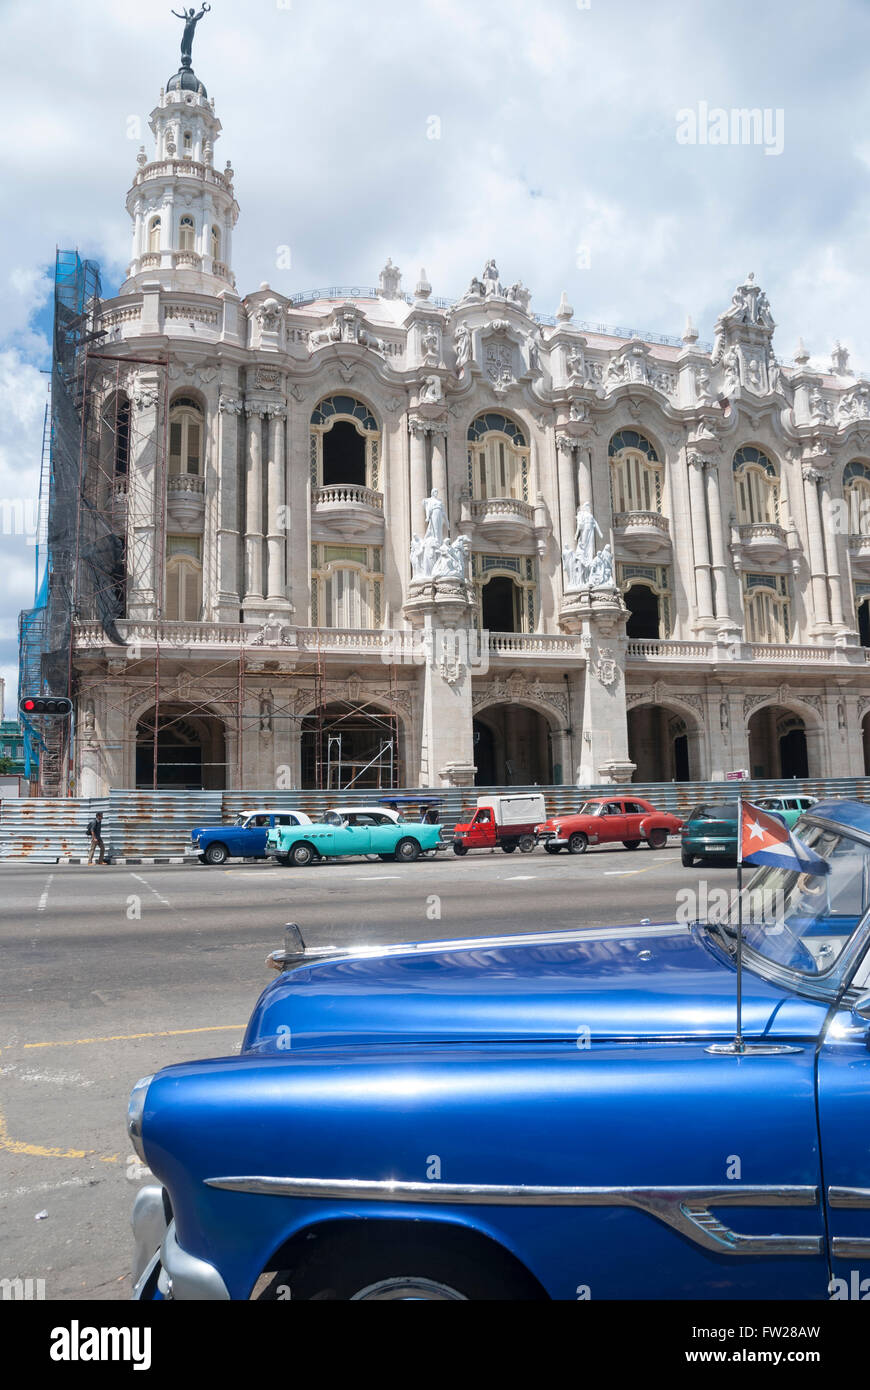 Vecchio vintage americano anni cinquanta vetture schierate per noleggio come i taxi e i veicoli per tour sul Prado nel centro di Avana Cuba Foto Stock